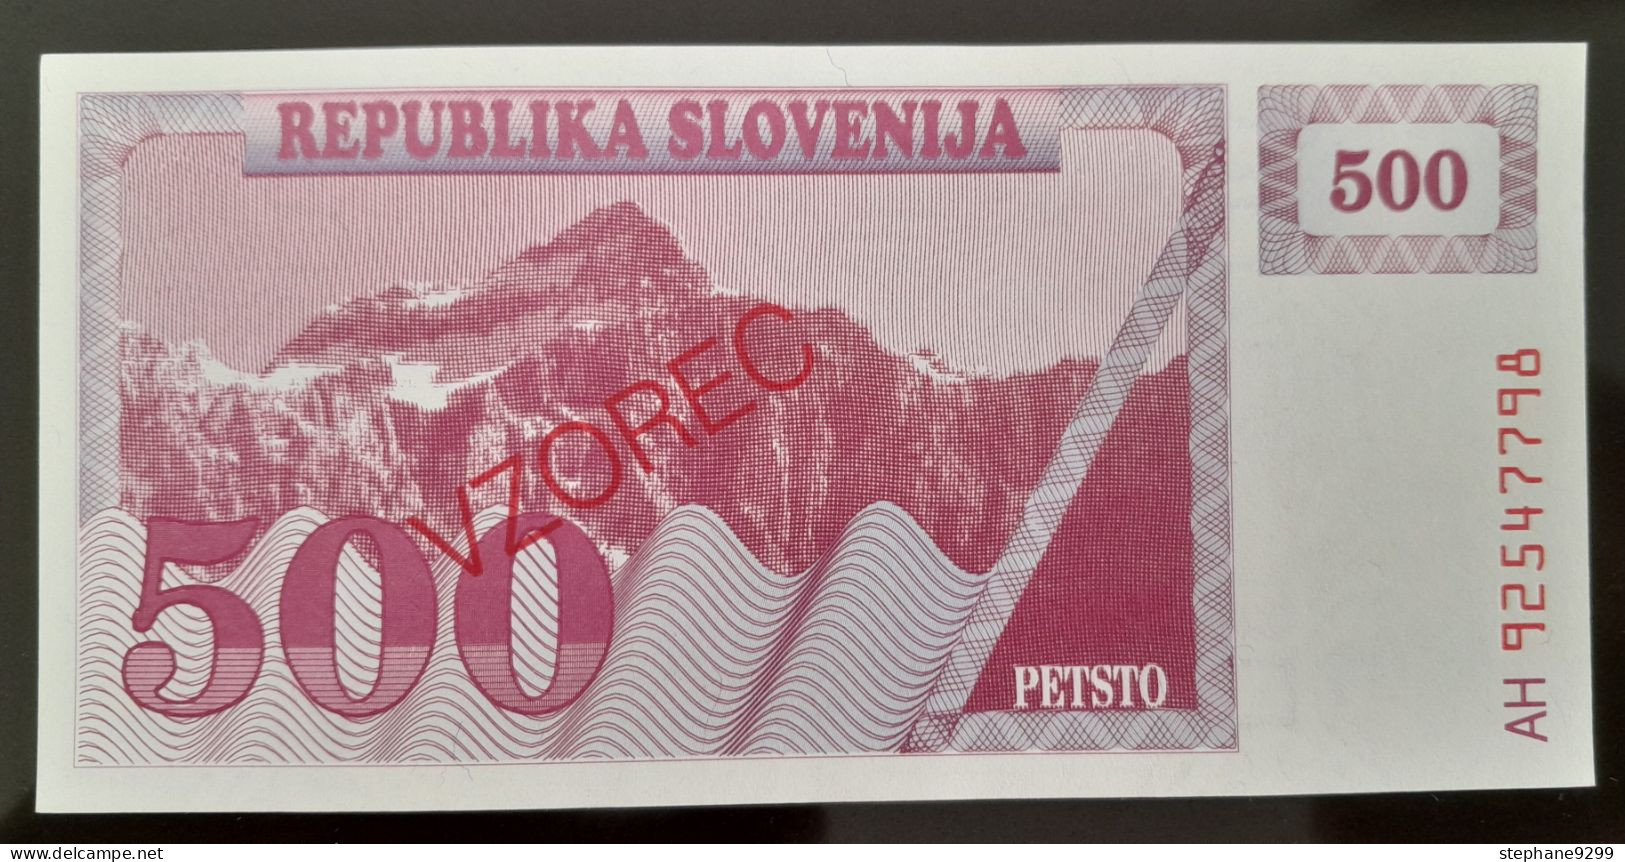 500 TOLARJEV 1992 SPECIMEN SLOVENIE NEUF/UNC - Slovenia